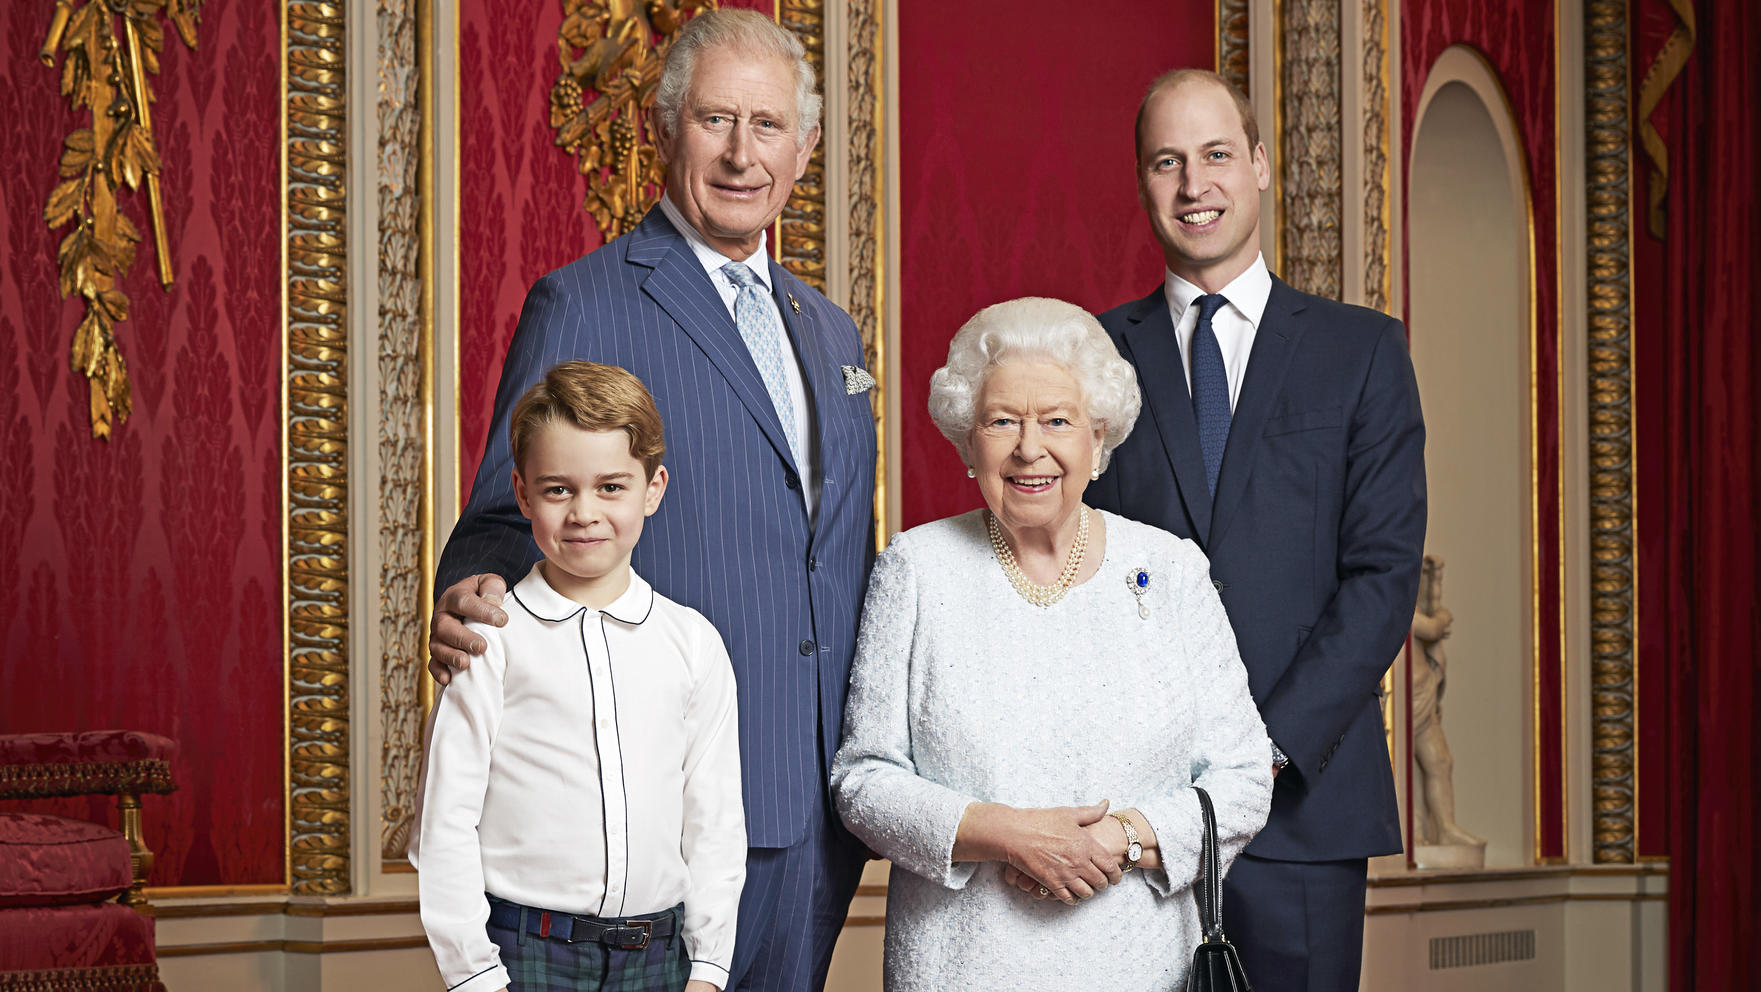 Vier Generationen auf einem Foto: Prinz George, Prinz Charles, Prinz William und Queen Elizabeth II. im Thronsaal.